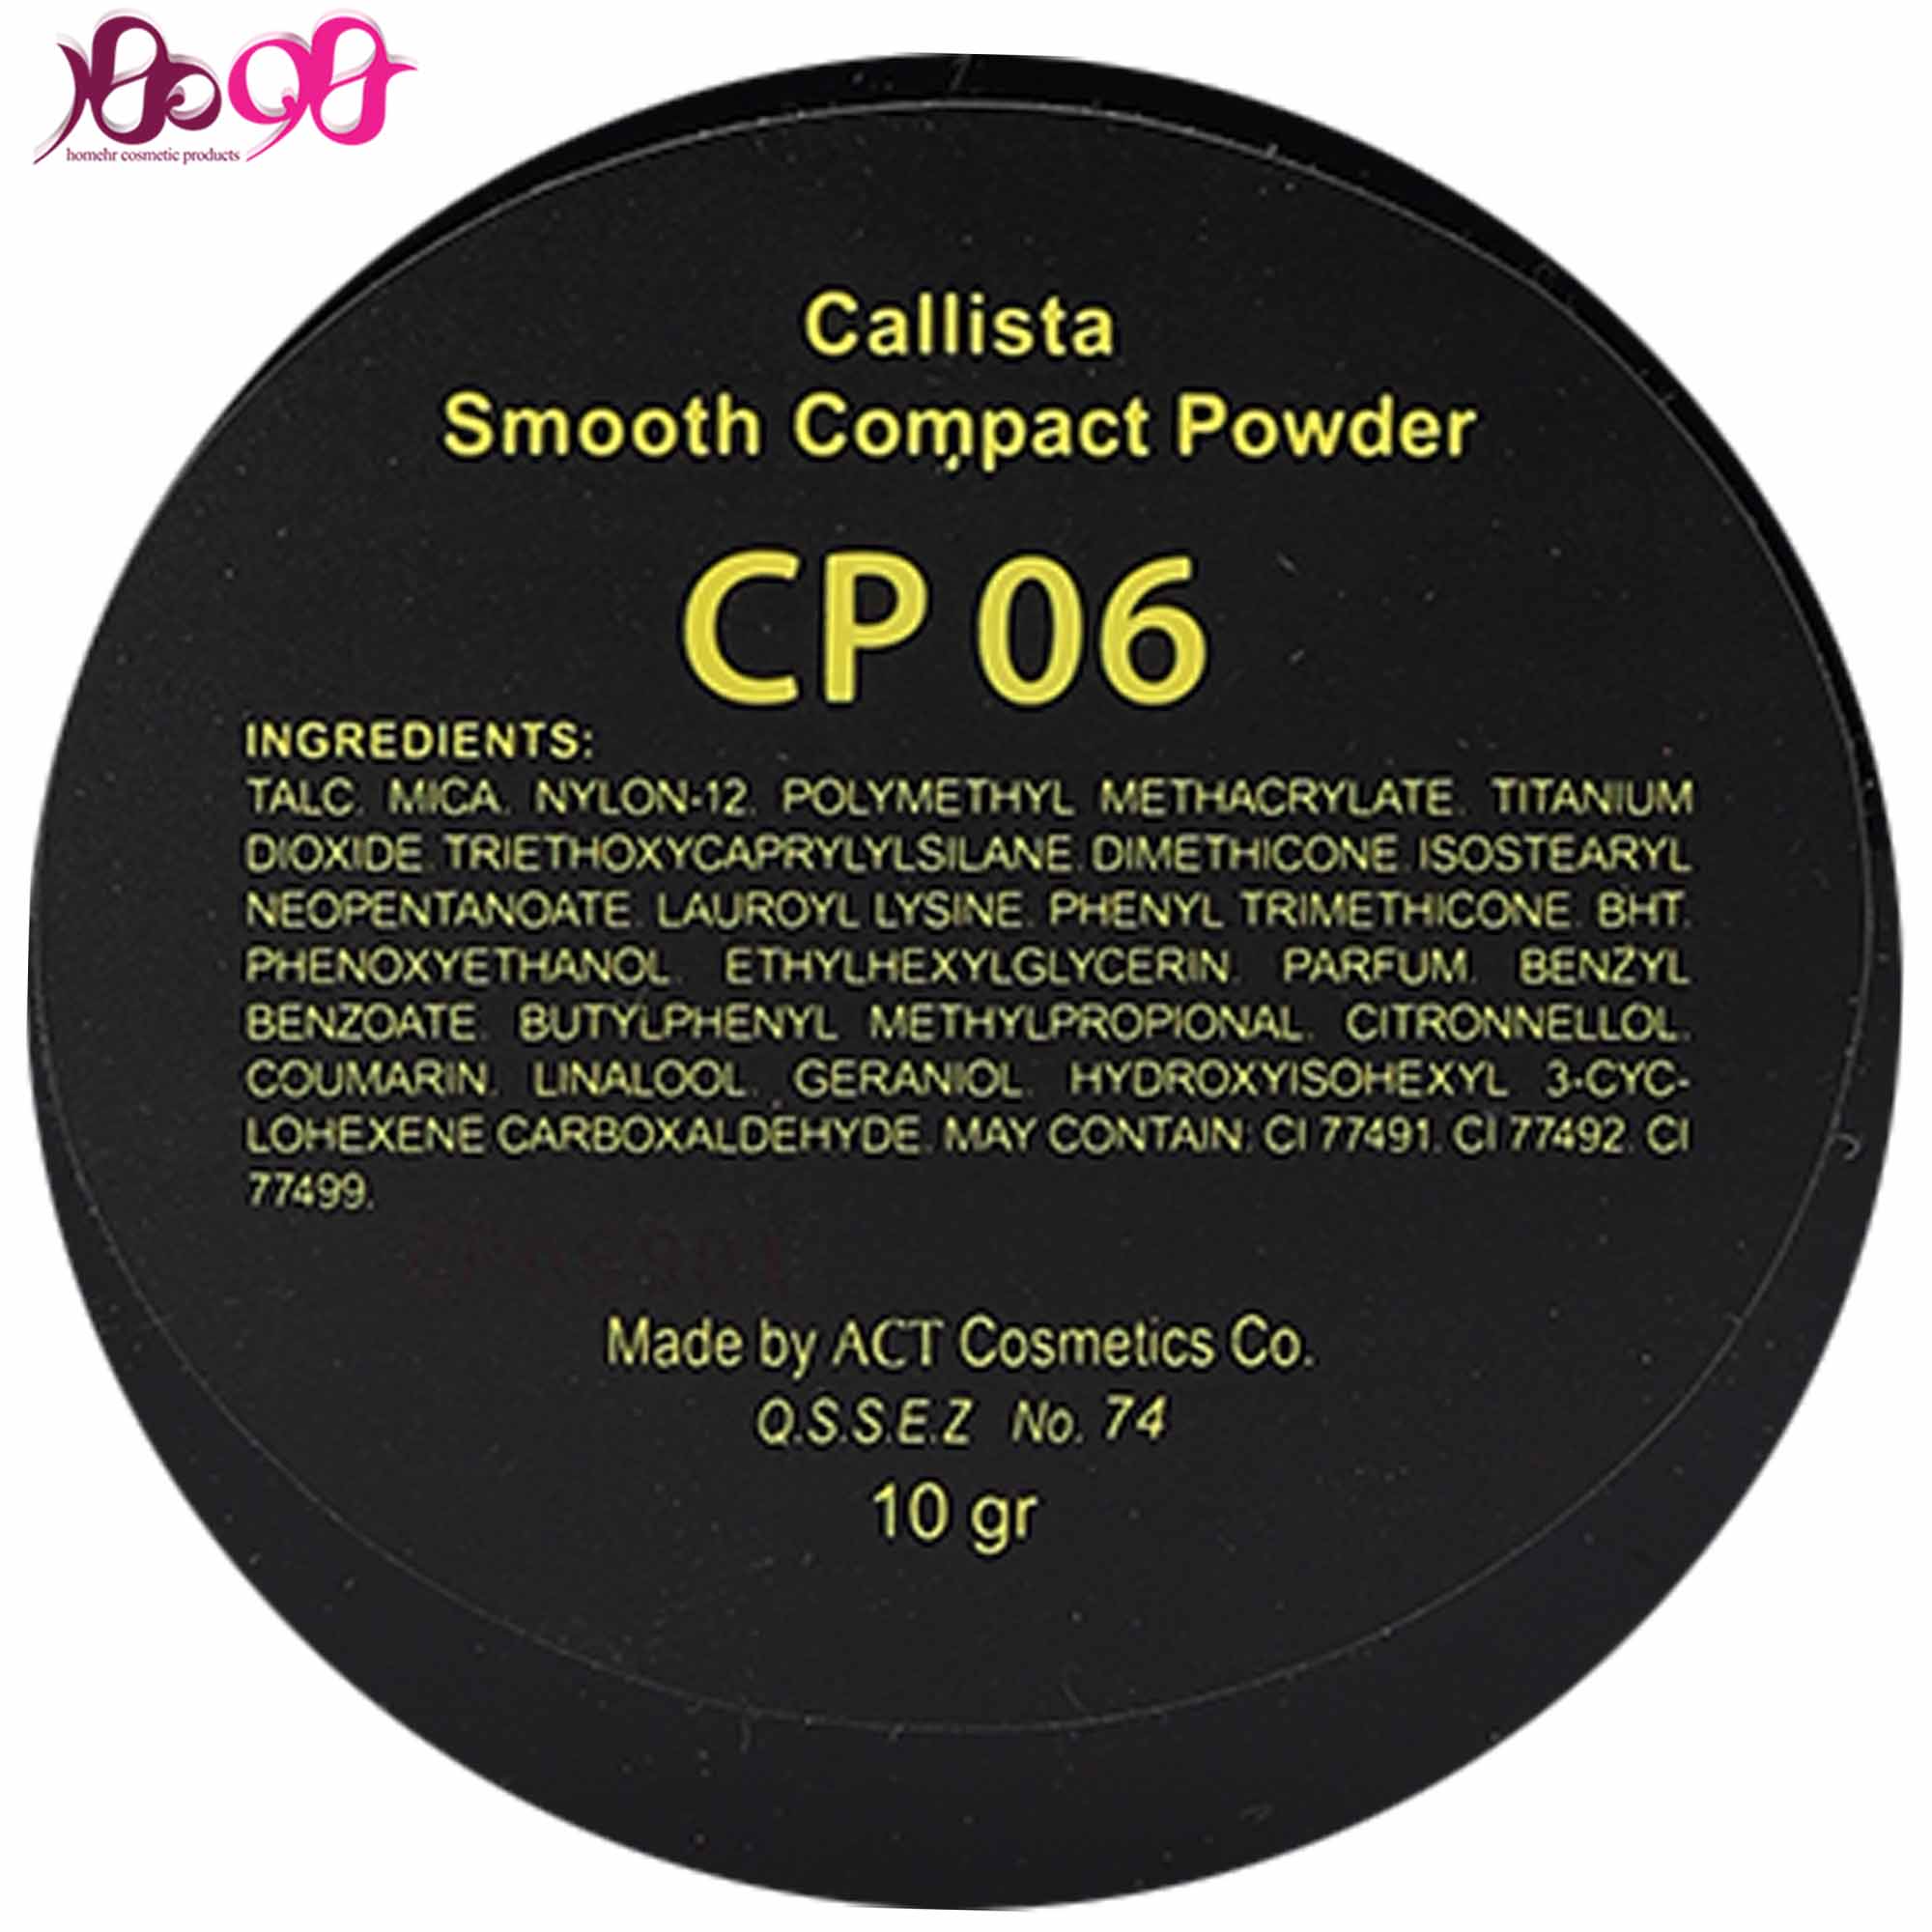 پنکيک-CP06-کاليستا-Callista